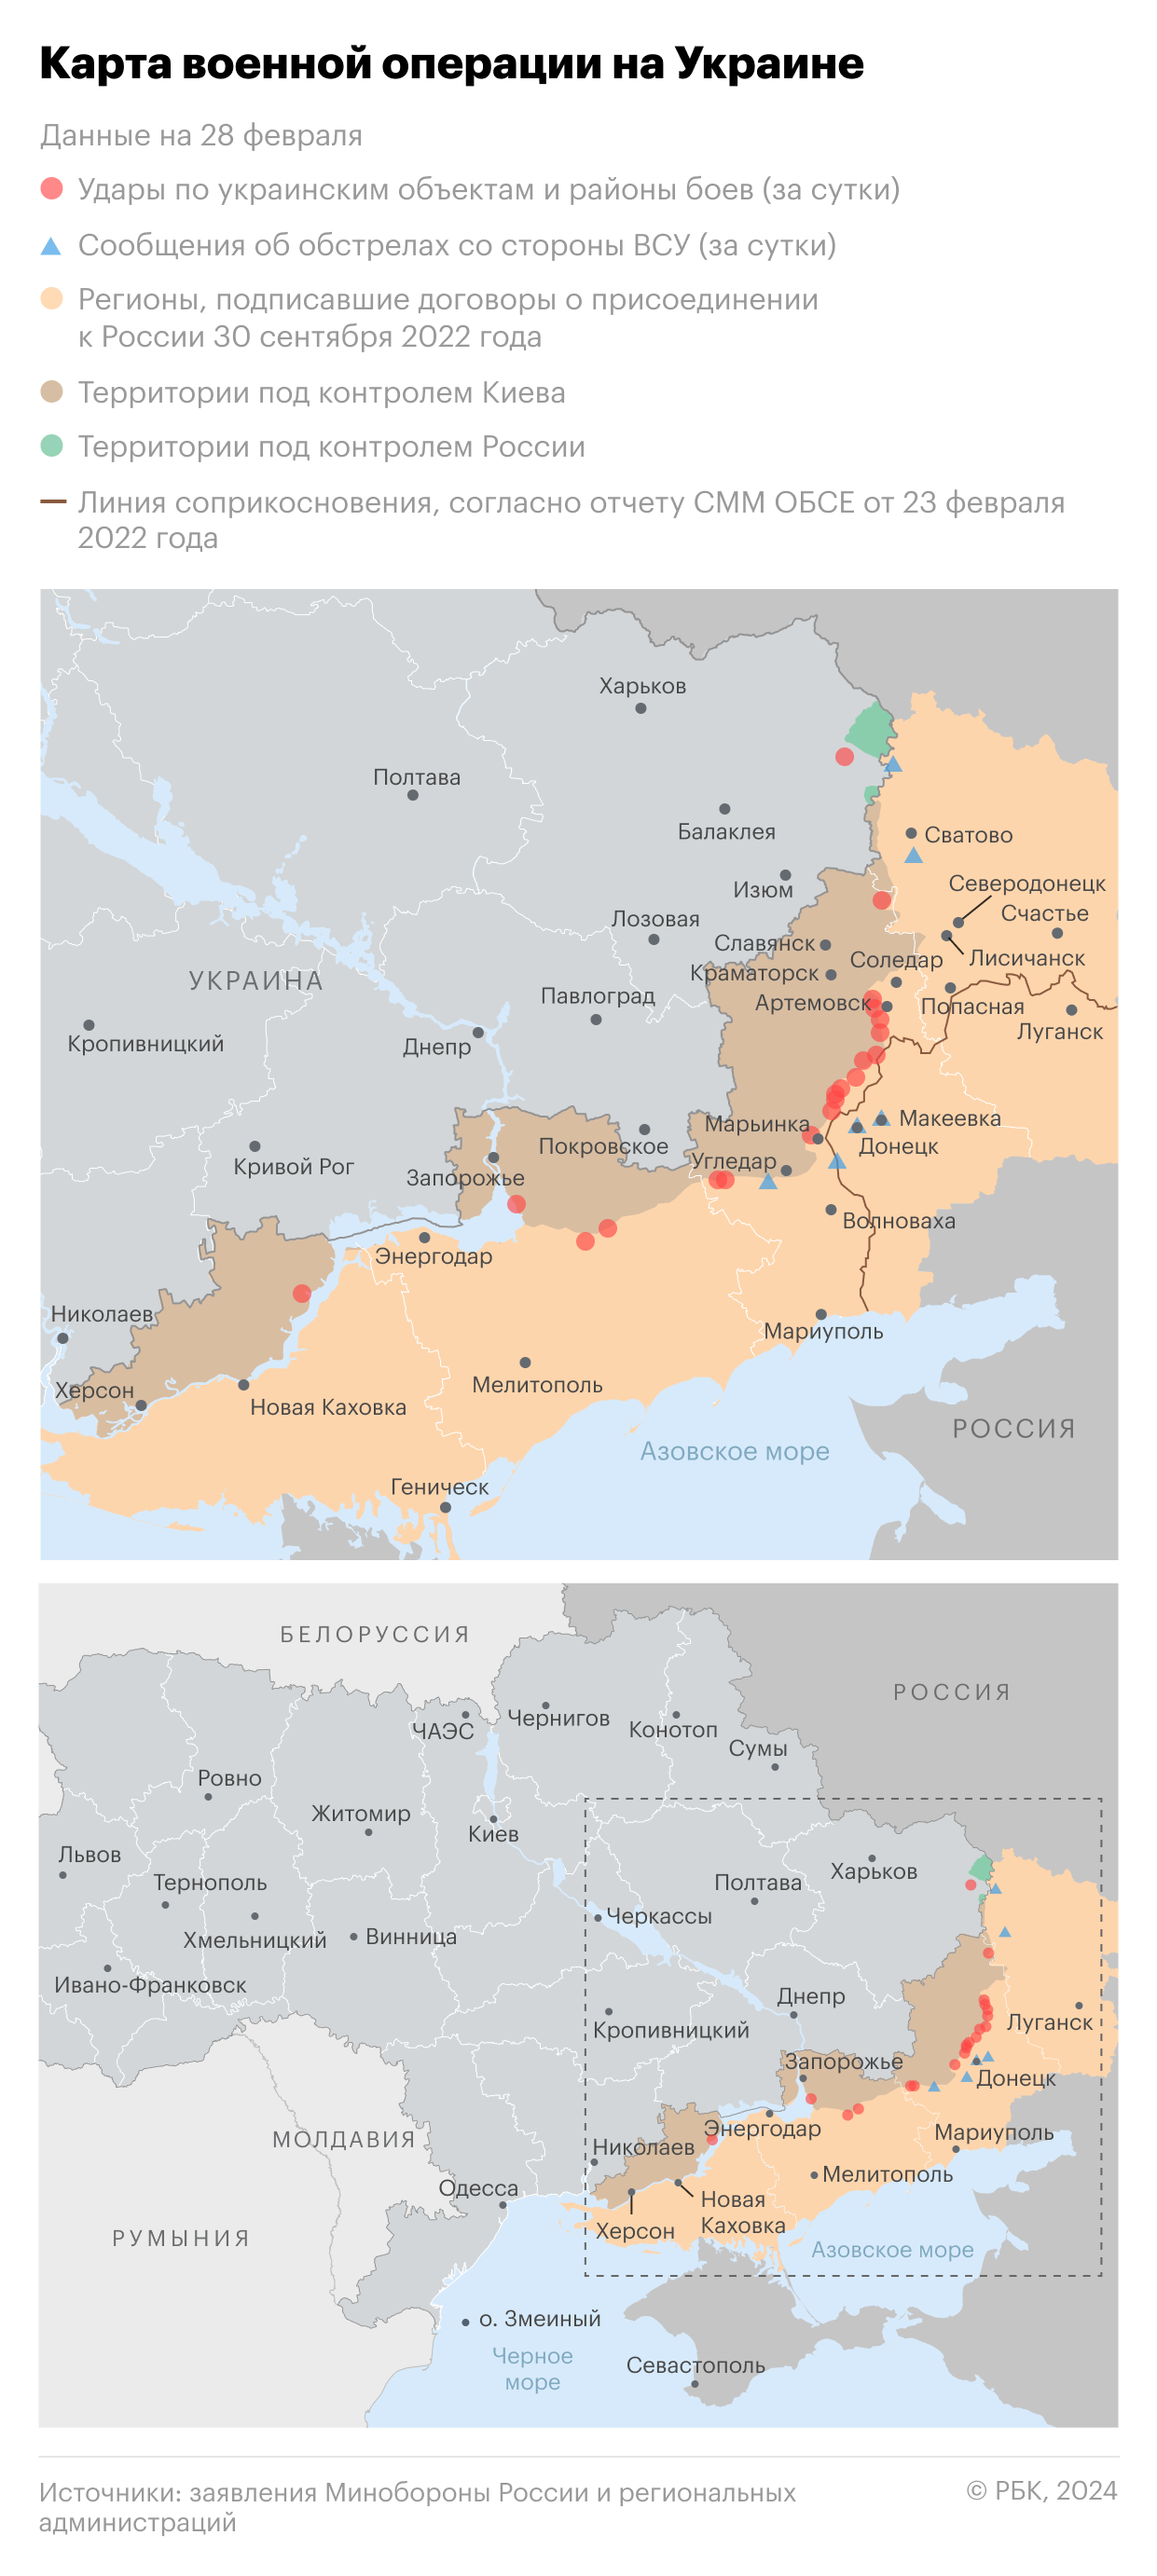 Военная операция на Украине. Карта на 28 февраля